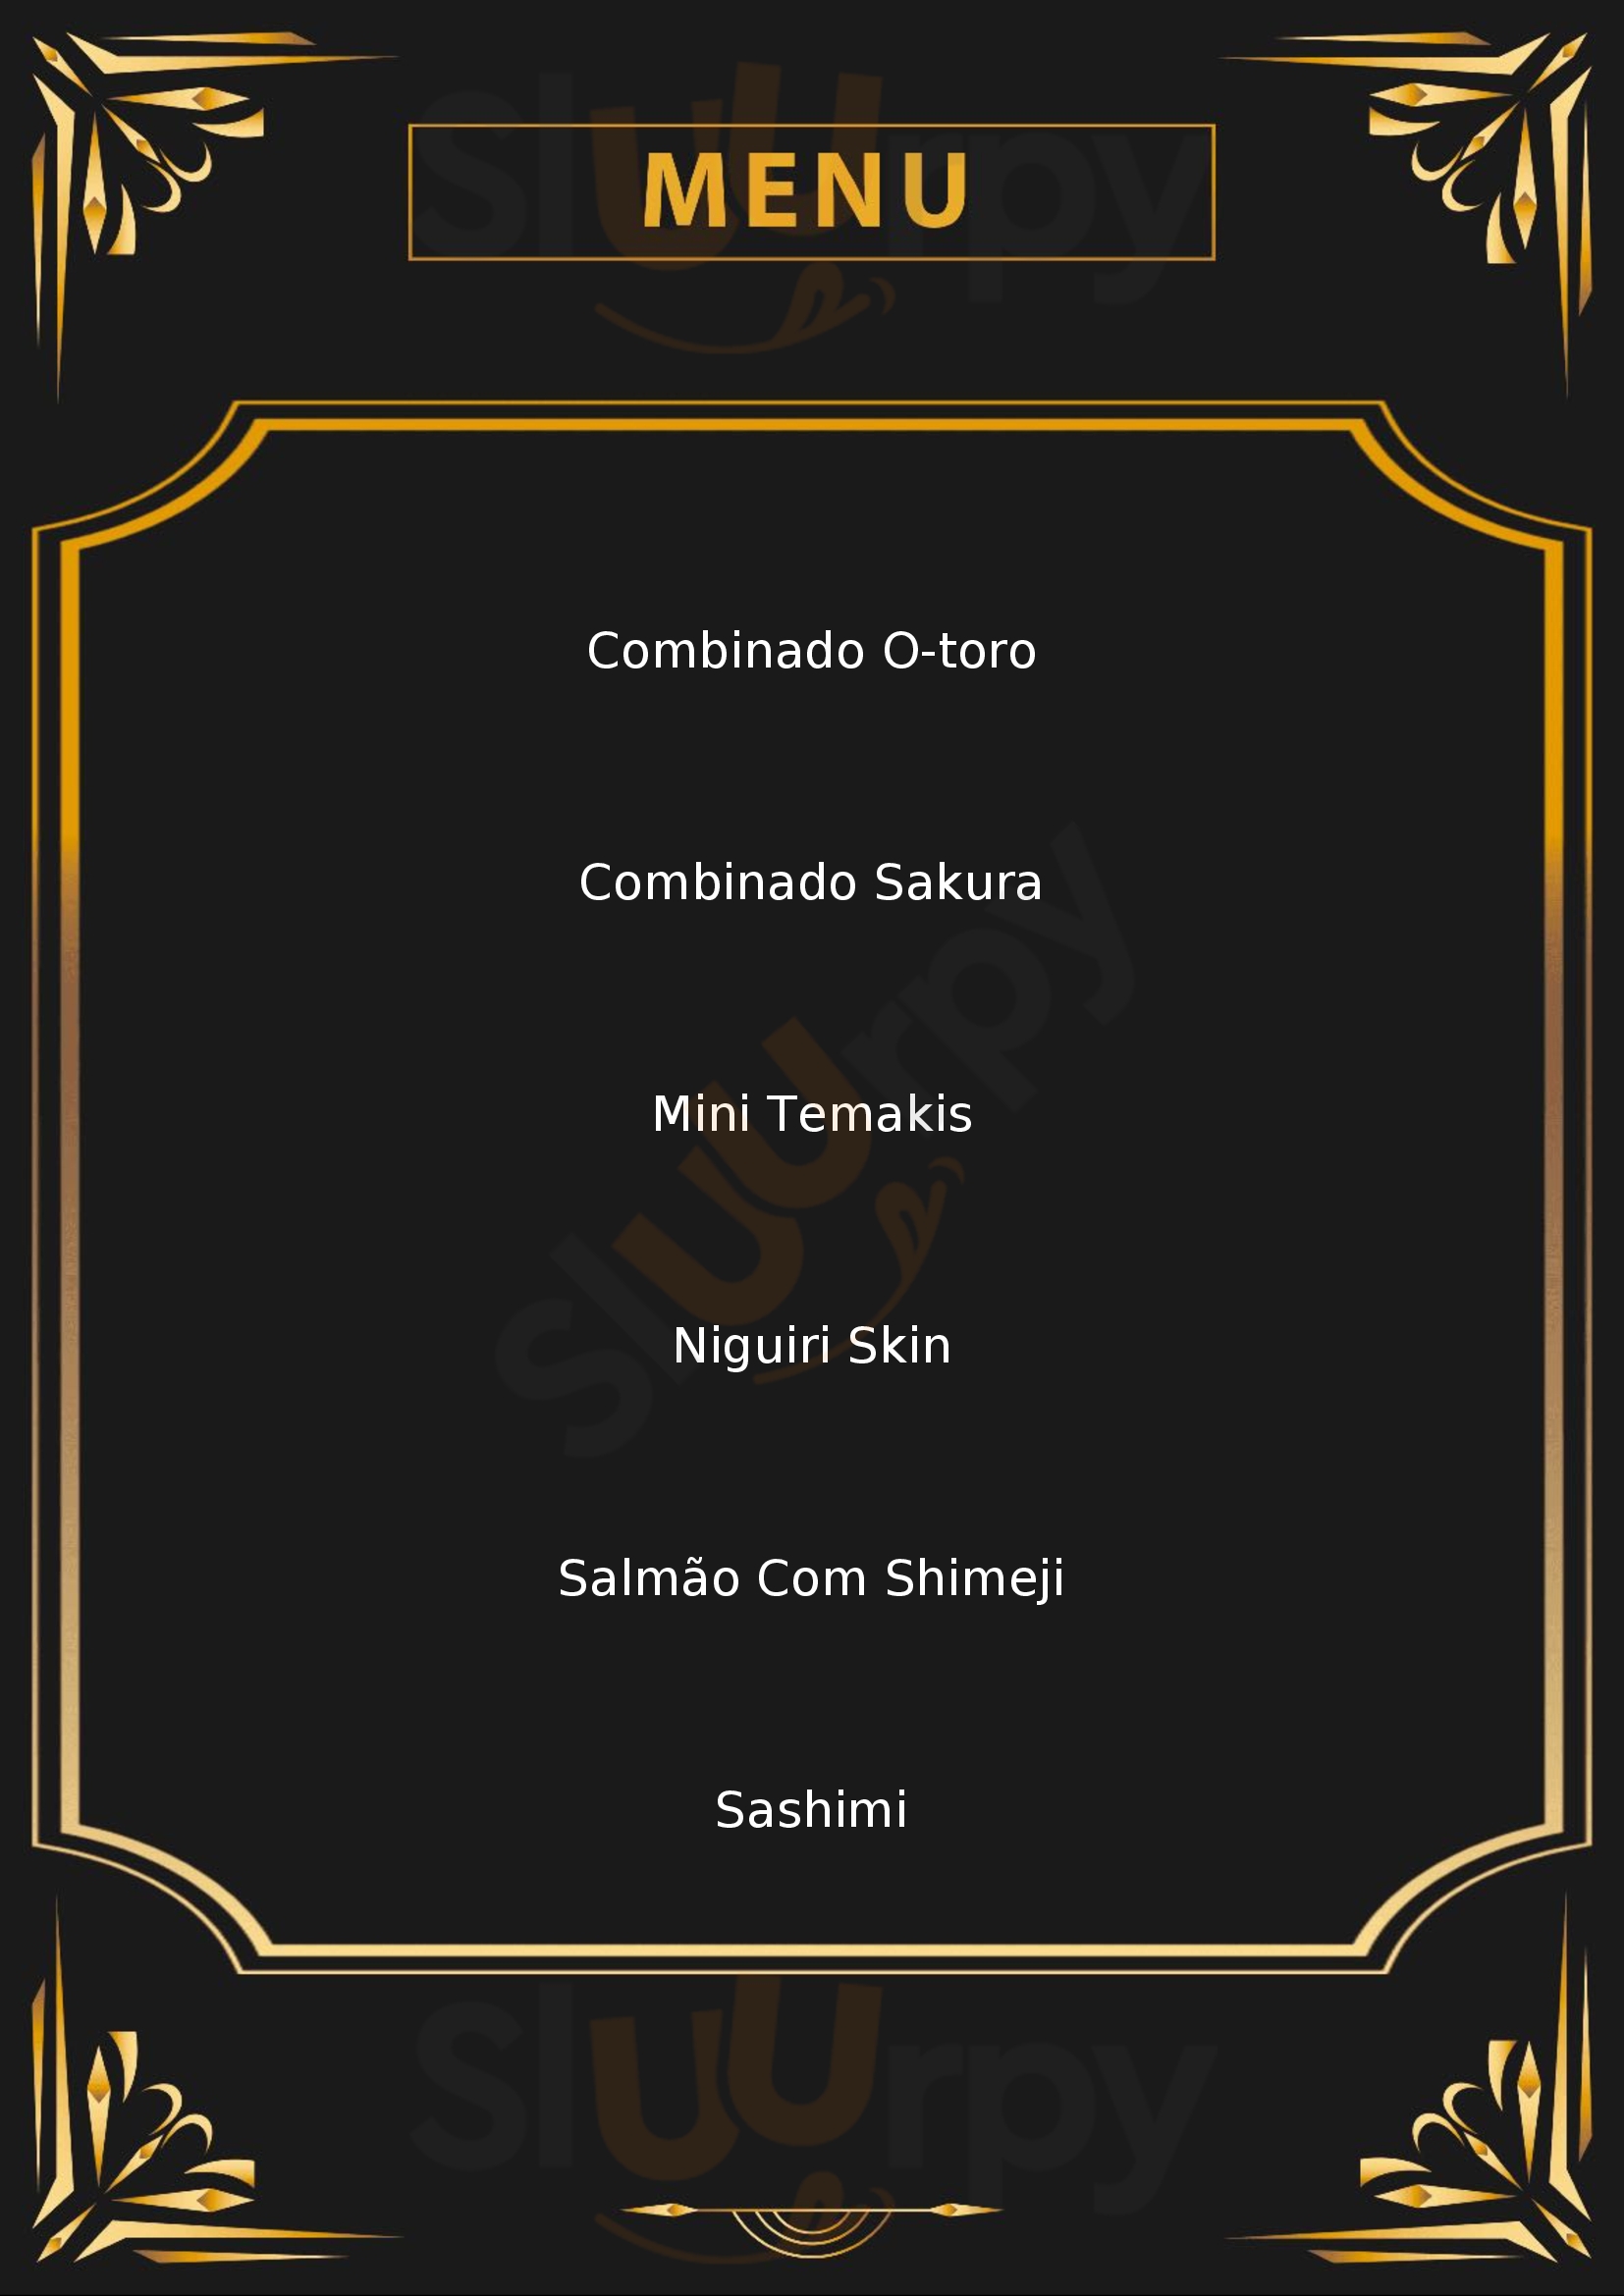 O-toro Sushi Porto Alegre Menu - 1